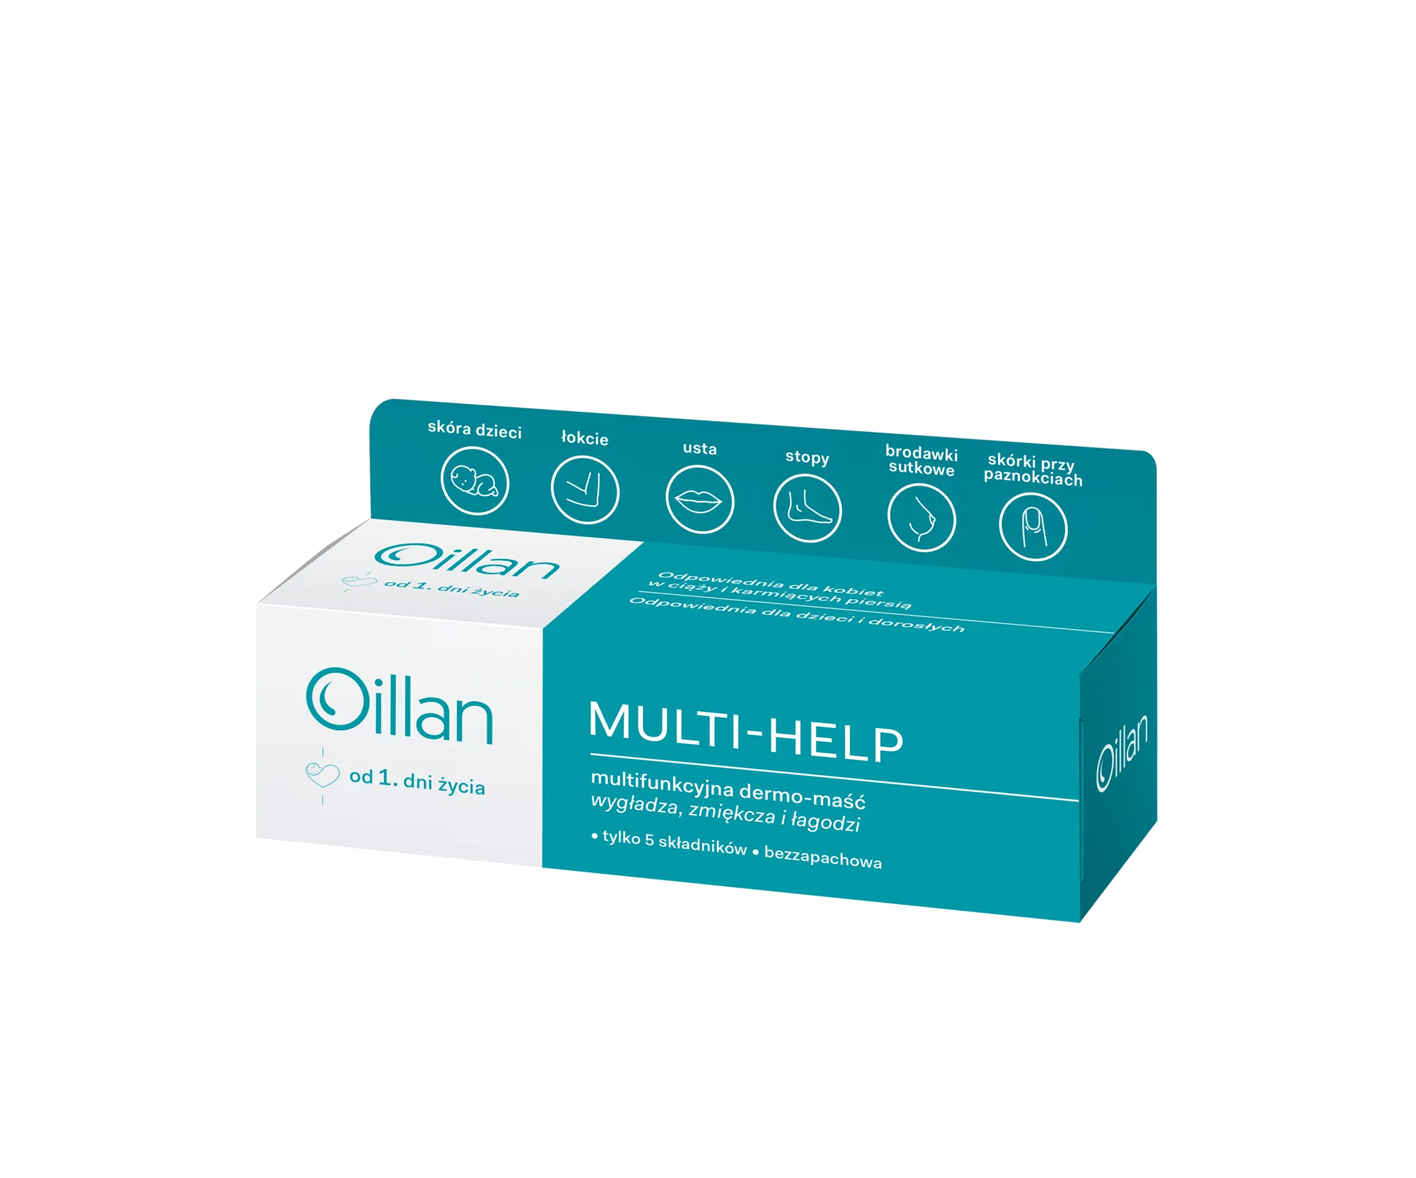 Oillan Multi-Help, Multifunkcyjna dermo-maść od 1 dnia życia, Maść na atopowe zapalenie skóry